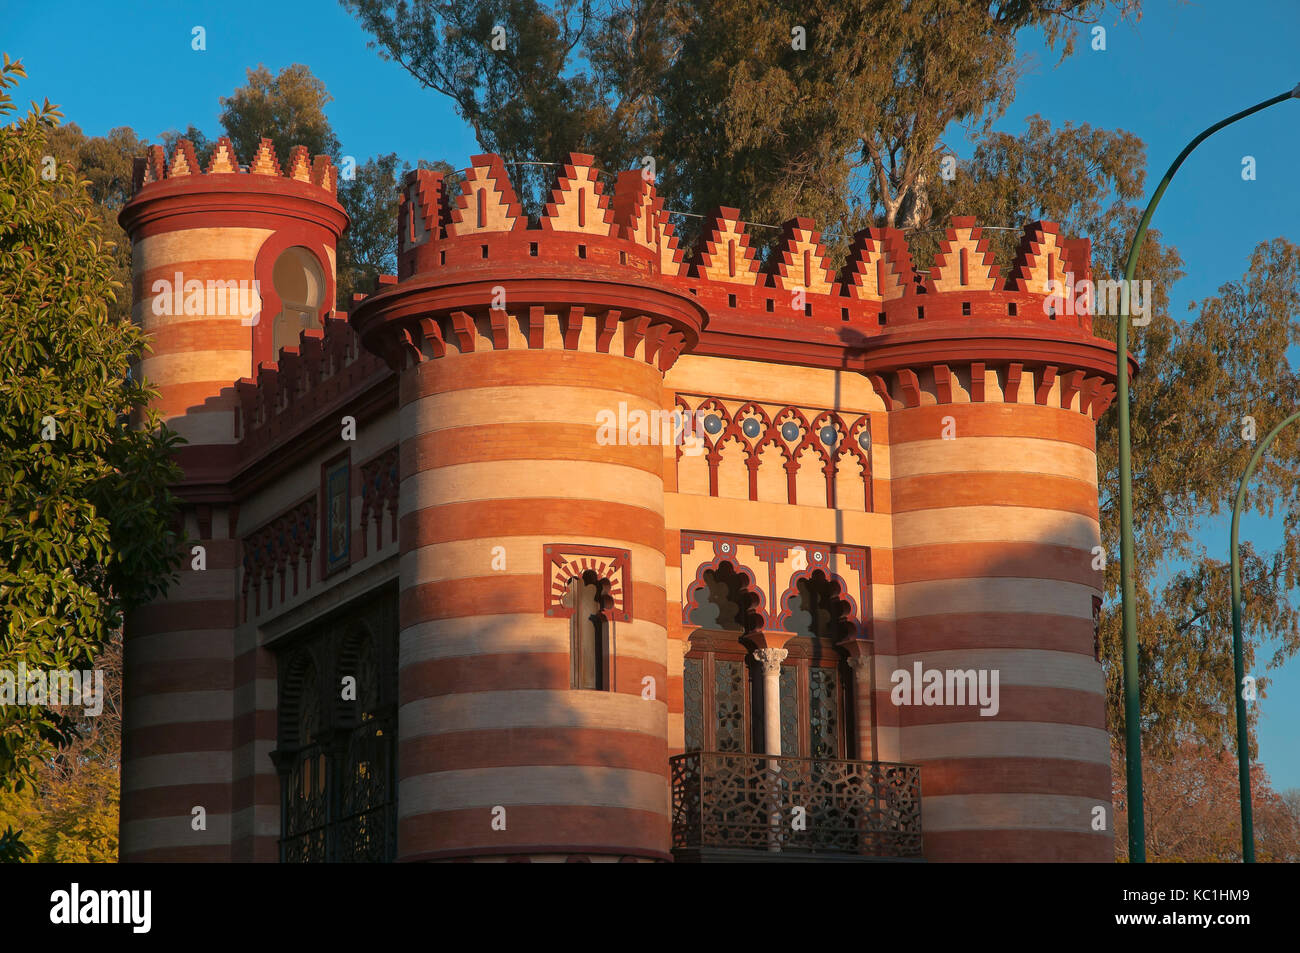 Office municipal de tourisme - bâtiment appelé "costurero de la Reina', Séville, Andalousie, Espagne, Europe Banque D'Images